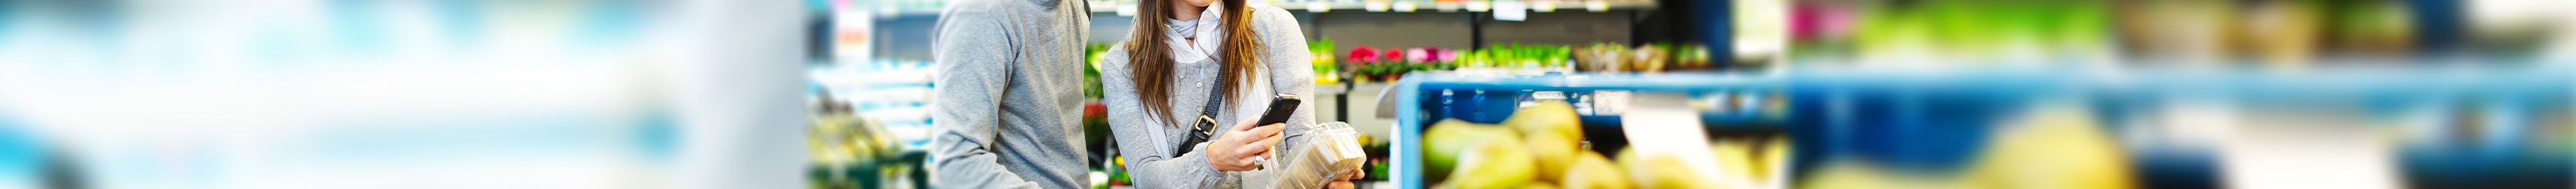 Ein Paar in einem Supermarkt scannt ein Produkt mit dem Smartphone